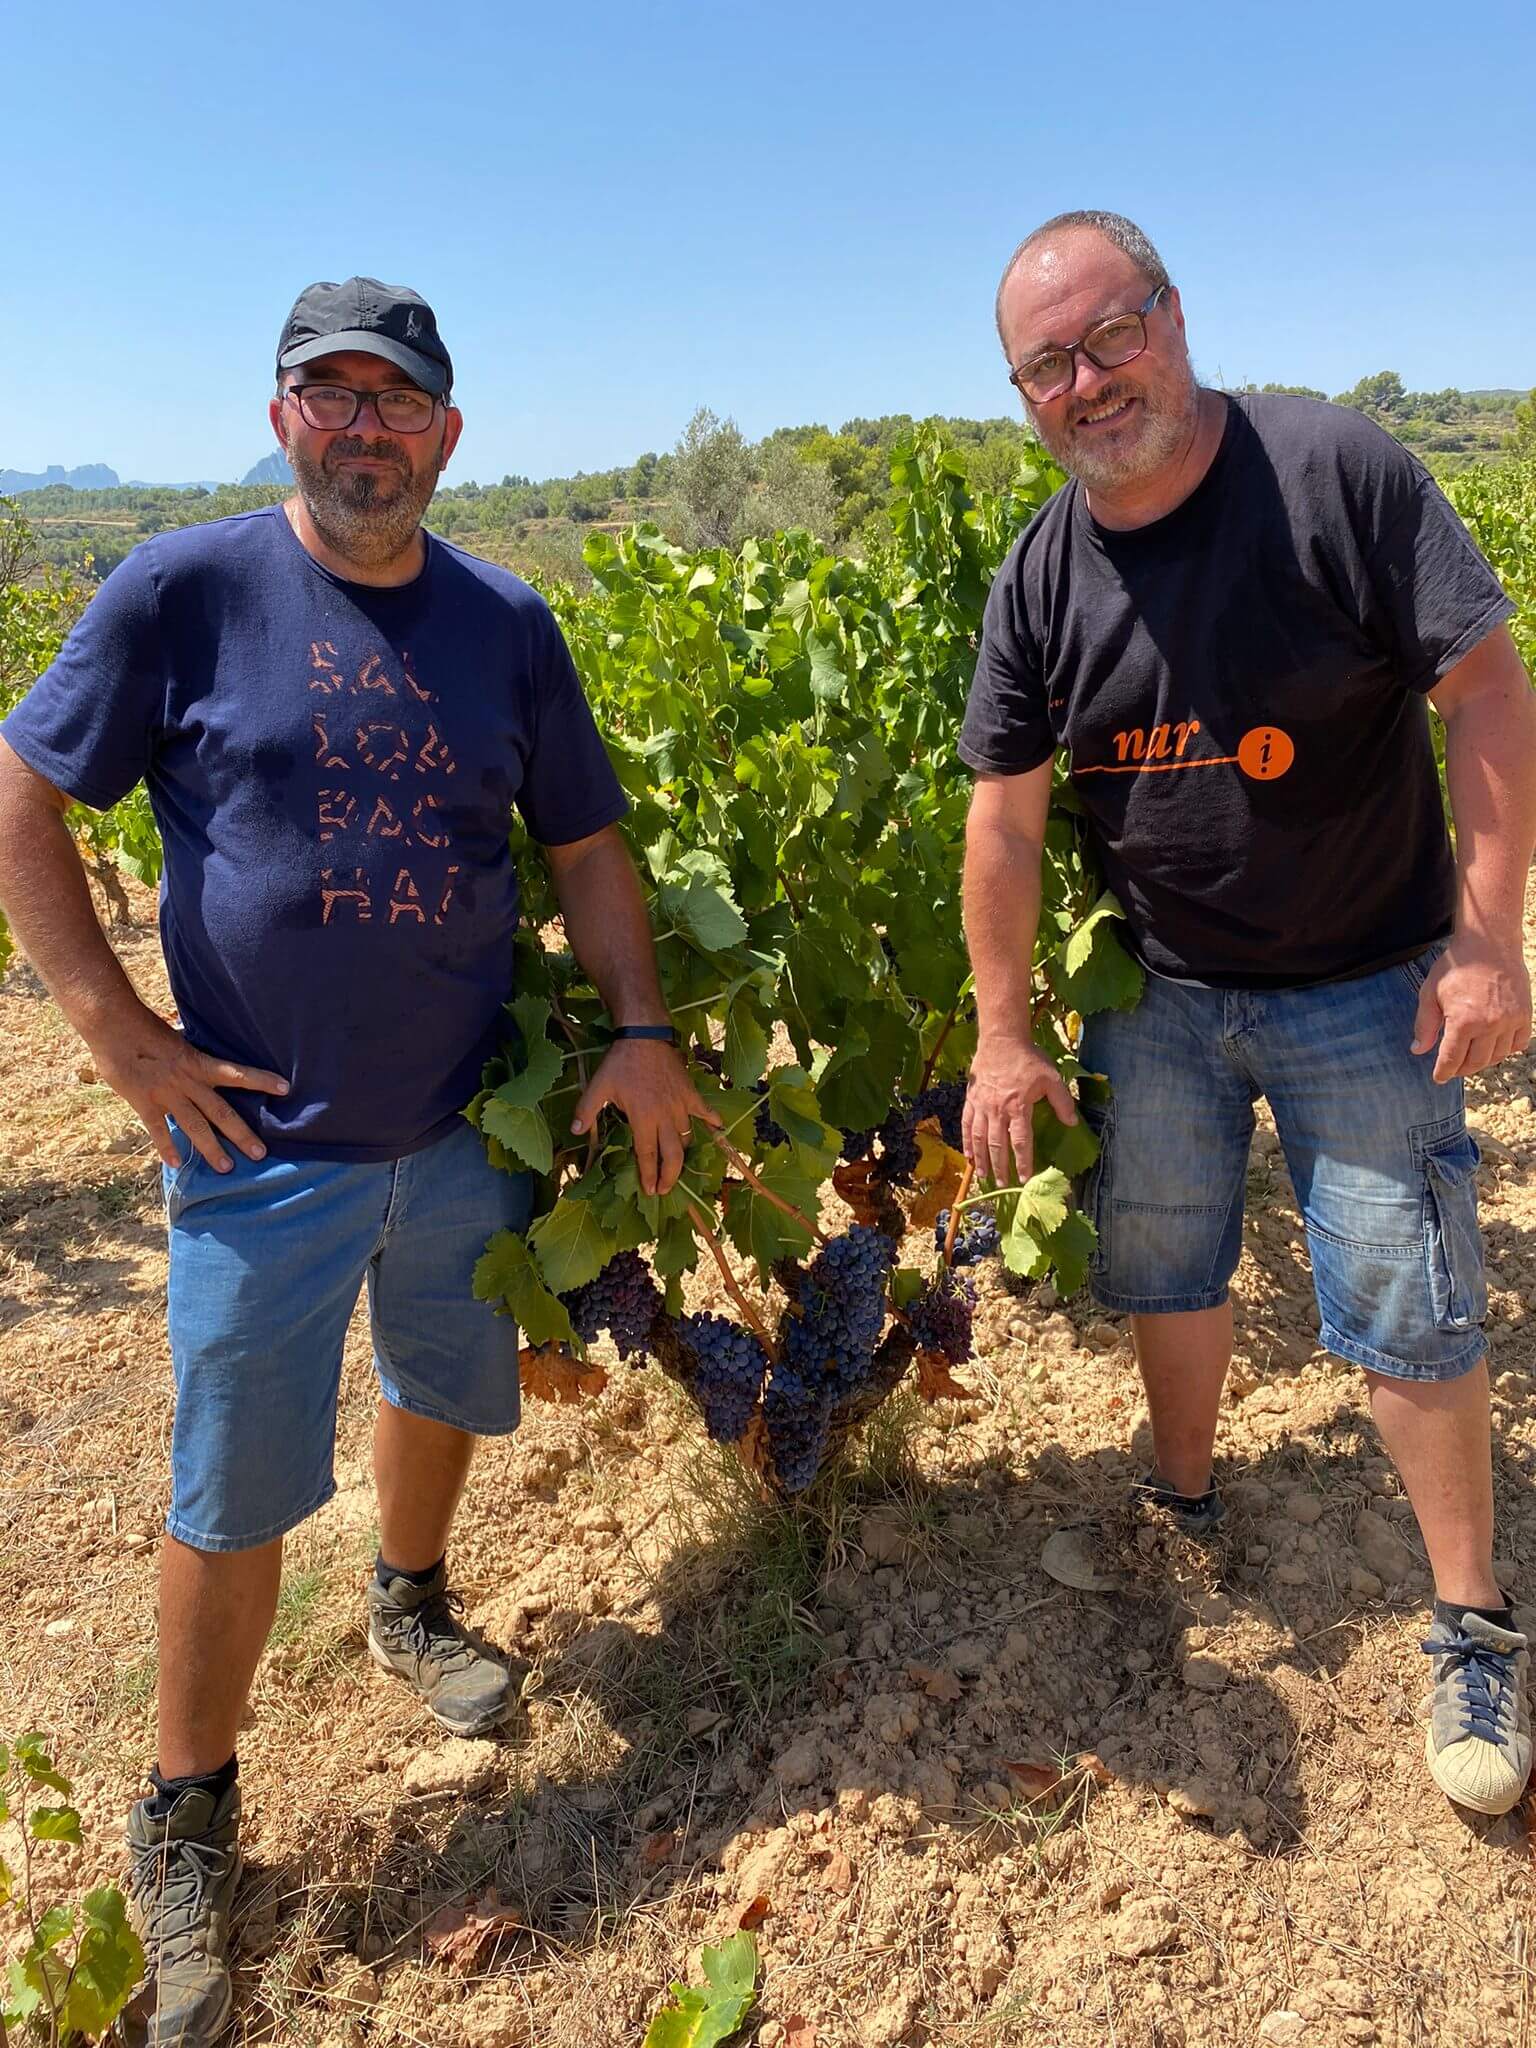 NARITORNAR Vins artesans de la Terra Alta Tarragona